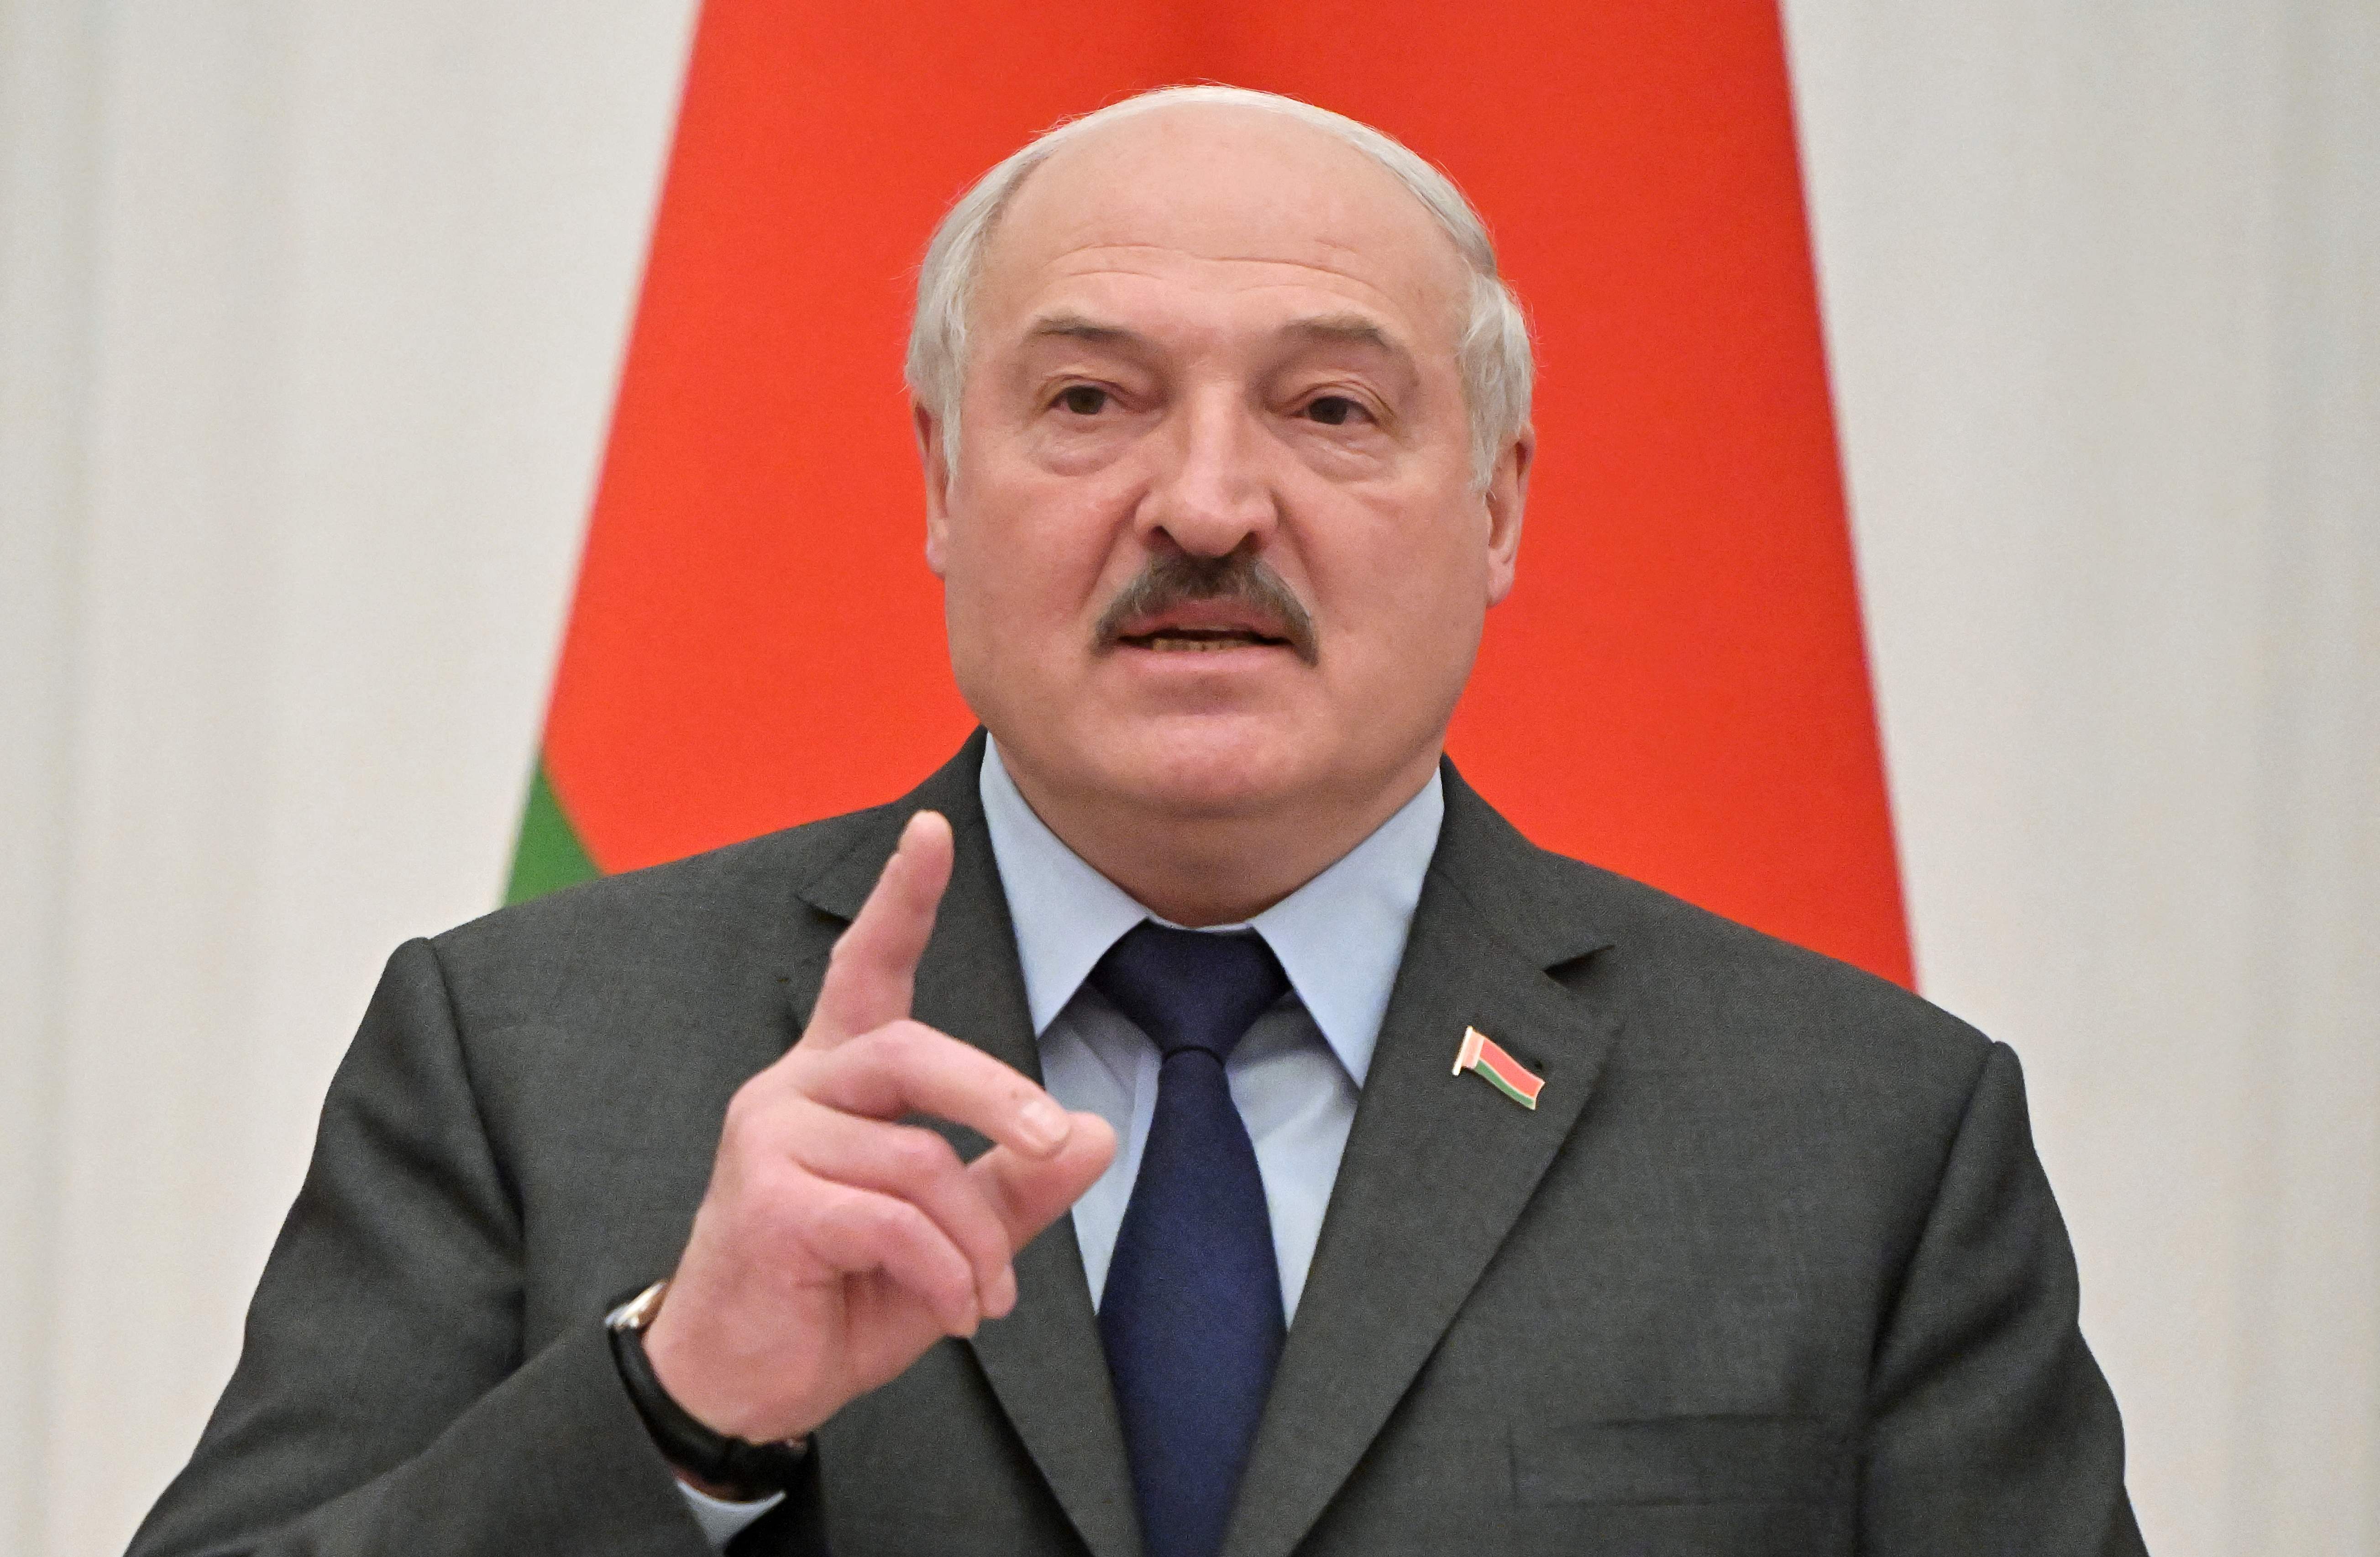 Foto de archivo: el presidente de Bielorrusia, Alexander Lukashenko, habla desde el Kremlin en Moscú el 18 de febrero de 2022